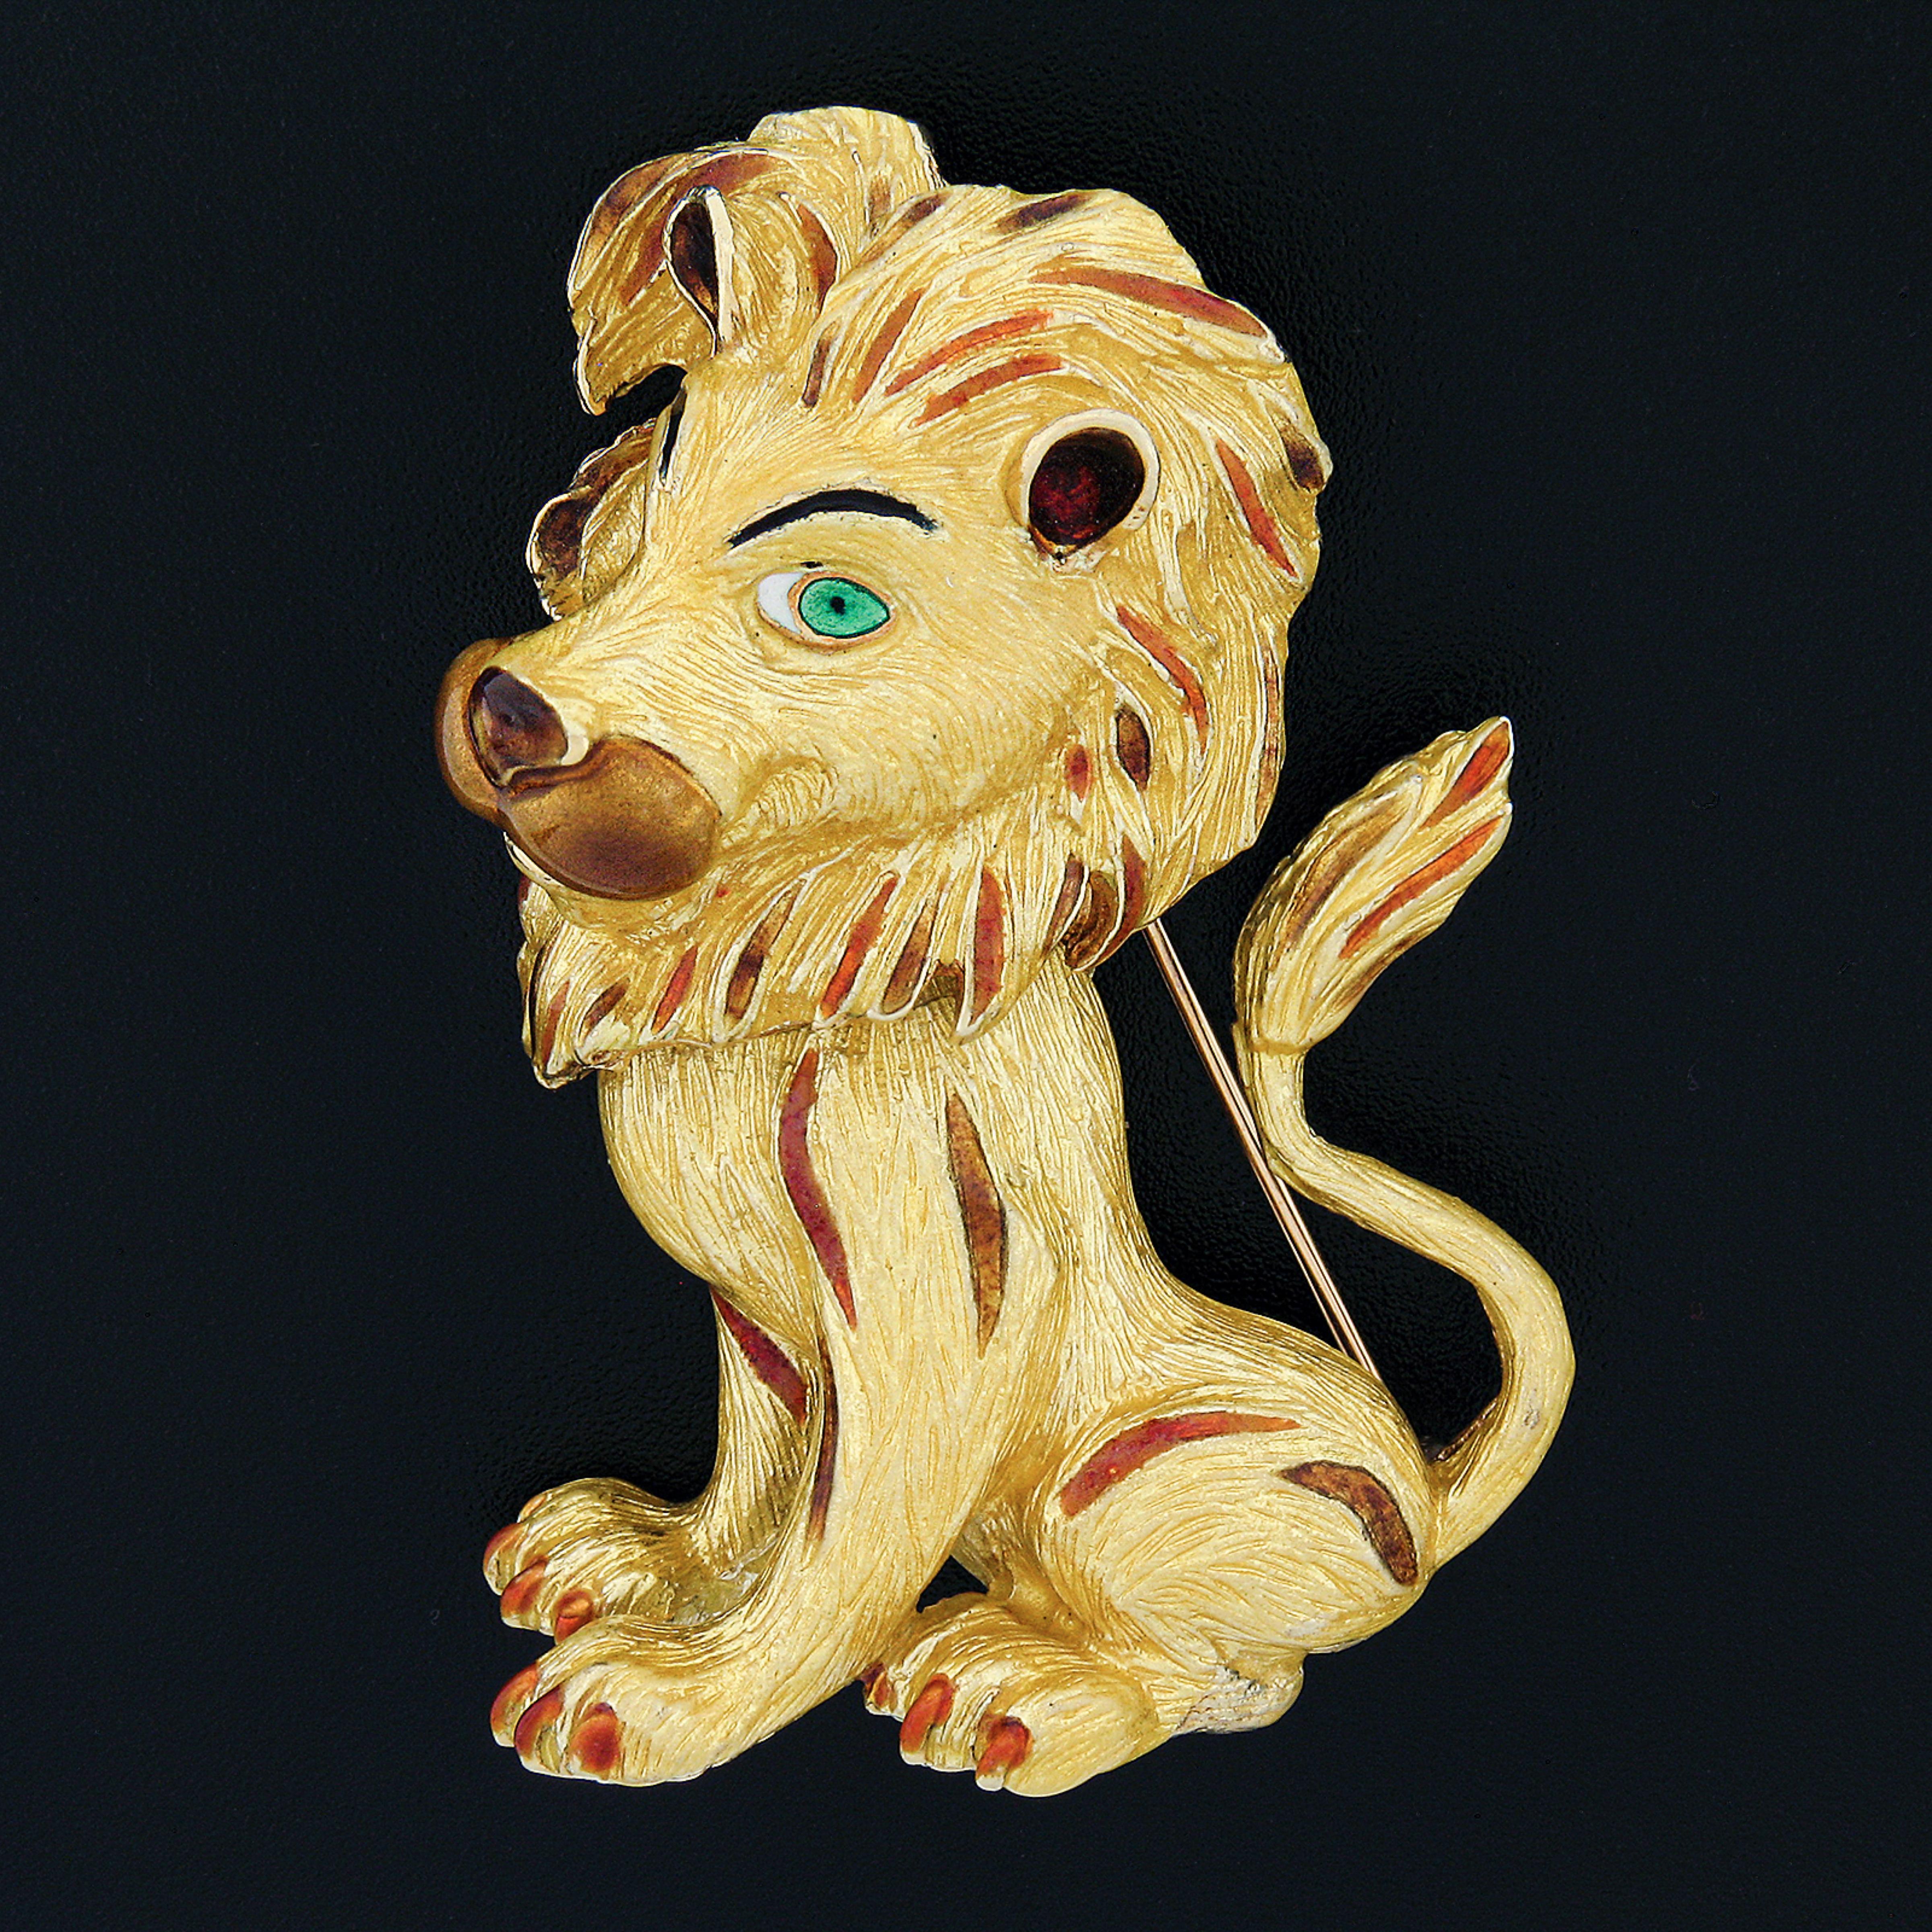 Diese prächtige Brosche/Anstecknadel im Vintage-Stil ist aus massivem 18-karätigem Gelbgold gefertigt und zeichnet sich durch ein perfekt strukturiertes, karikaturistisches Löwendesign mit einzigartiger und bemerkenswert hervorragender Verarbeitung